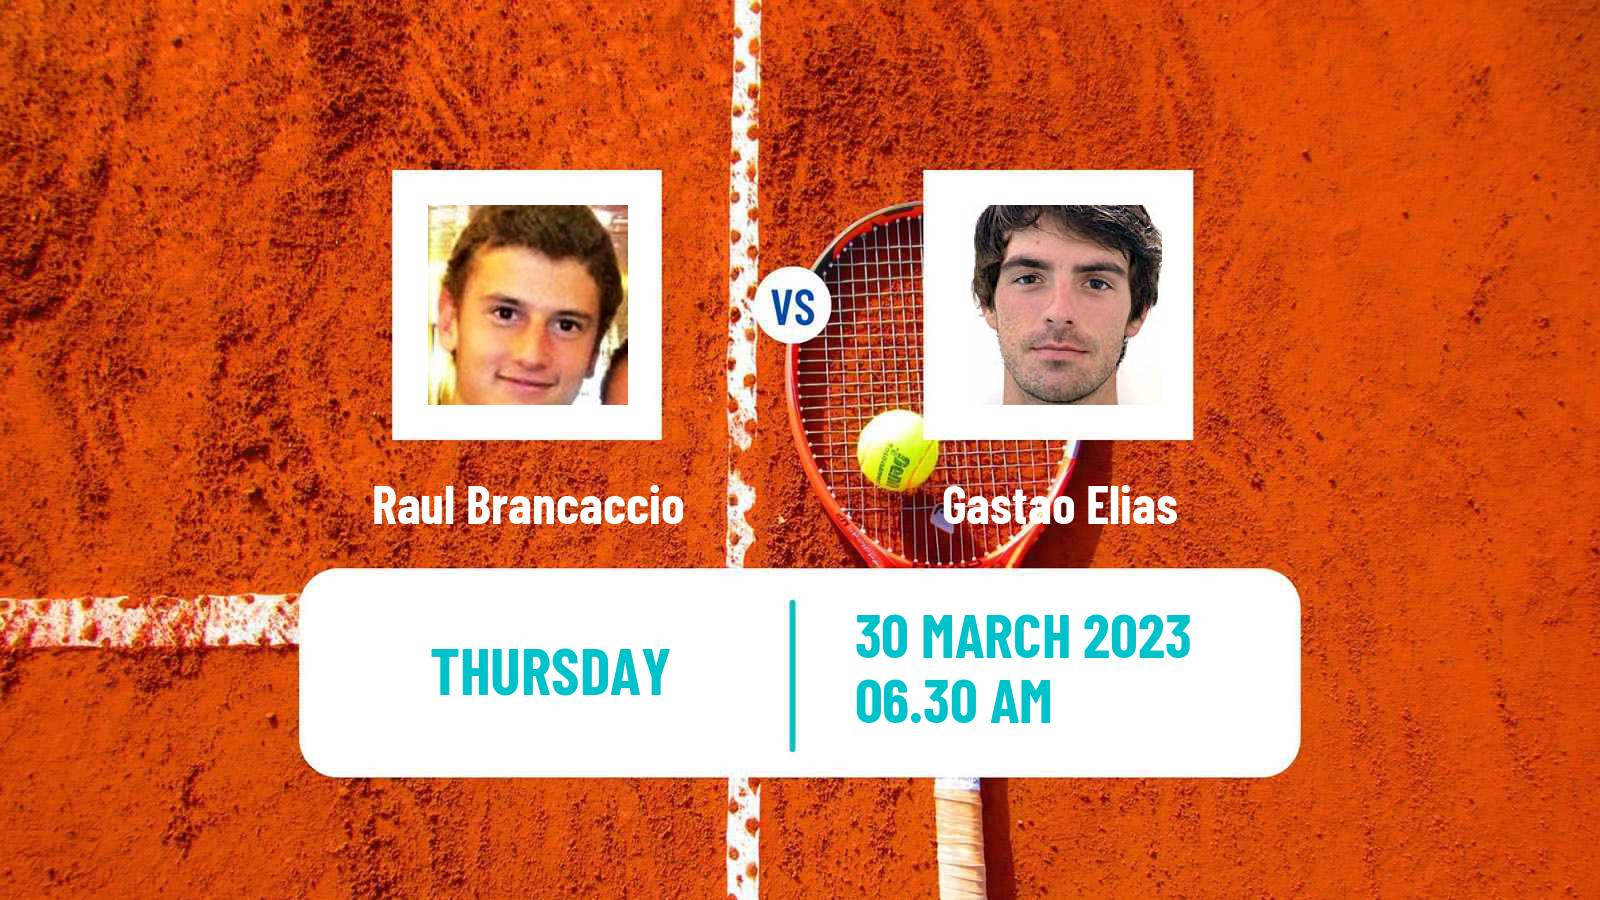 Tennis ATP Challenger Raul Brancaccio - Gastao Elias